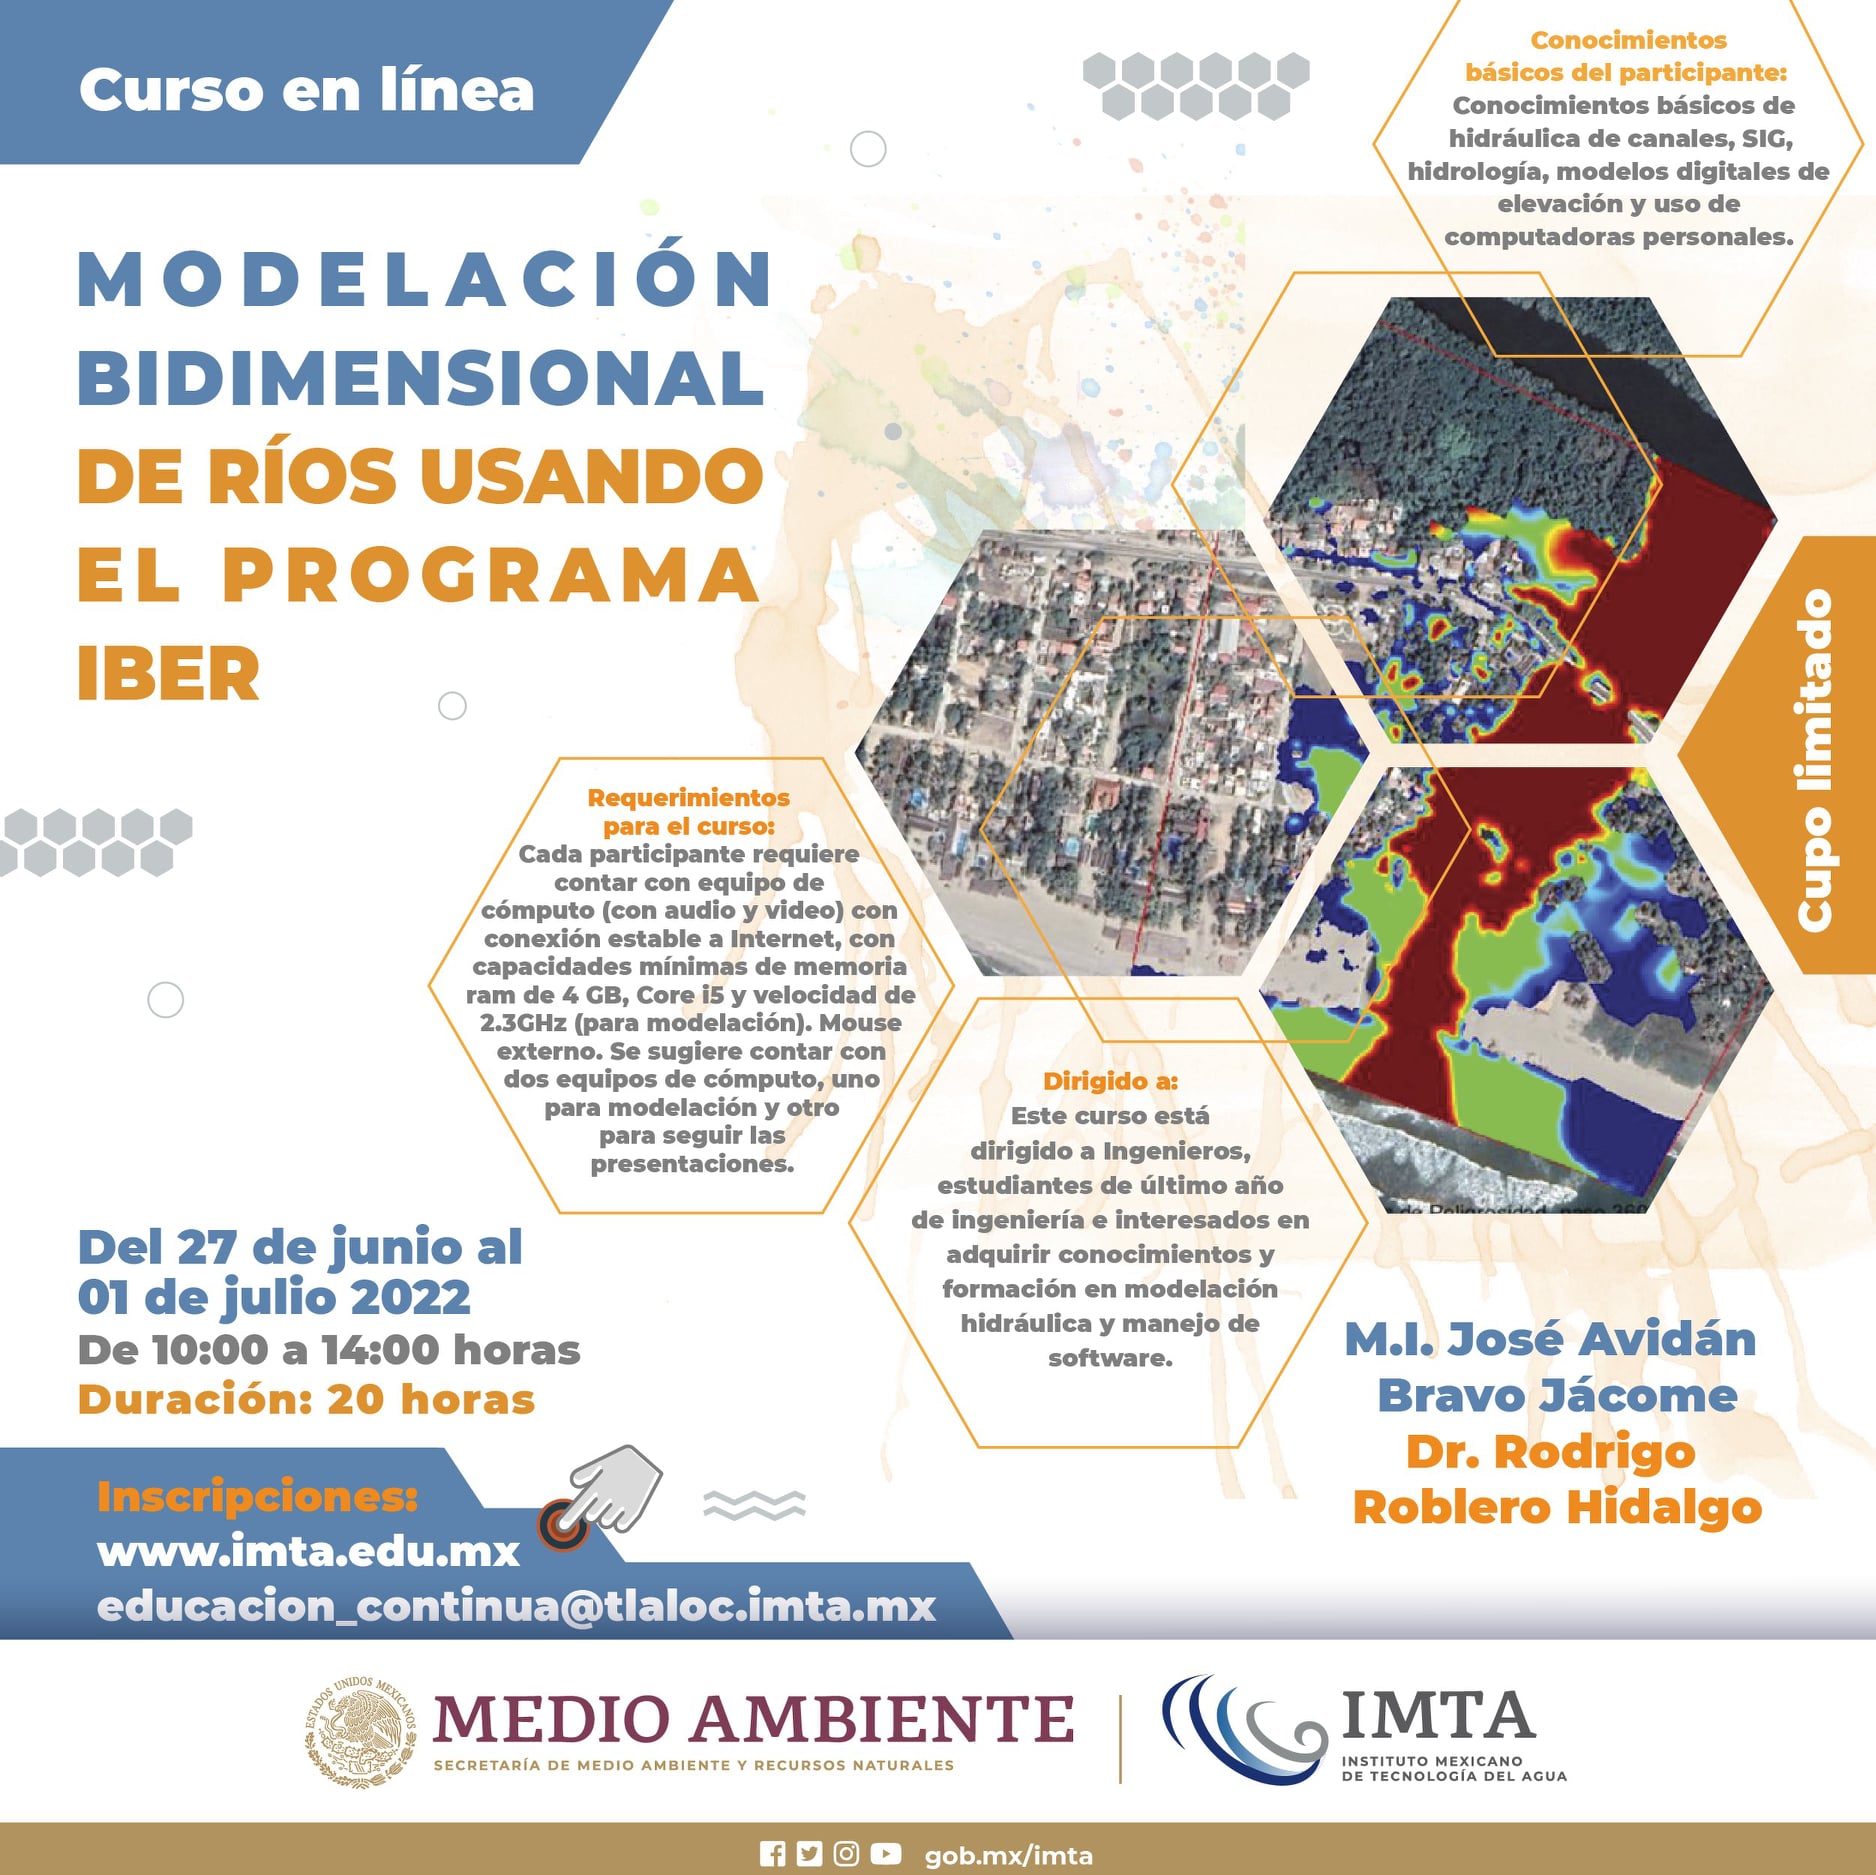 Curso en línea “Modelación bidimensional de ríos utilizando la plataforma IBER” IMTA)